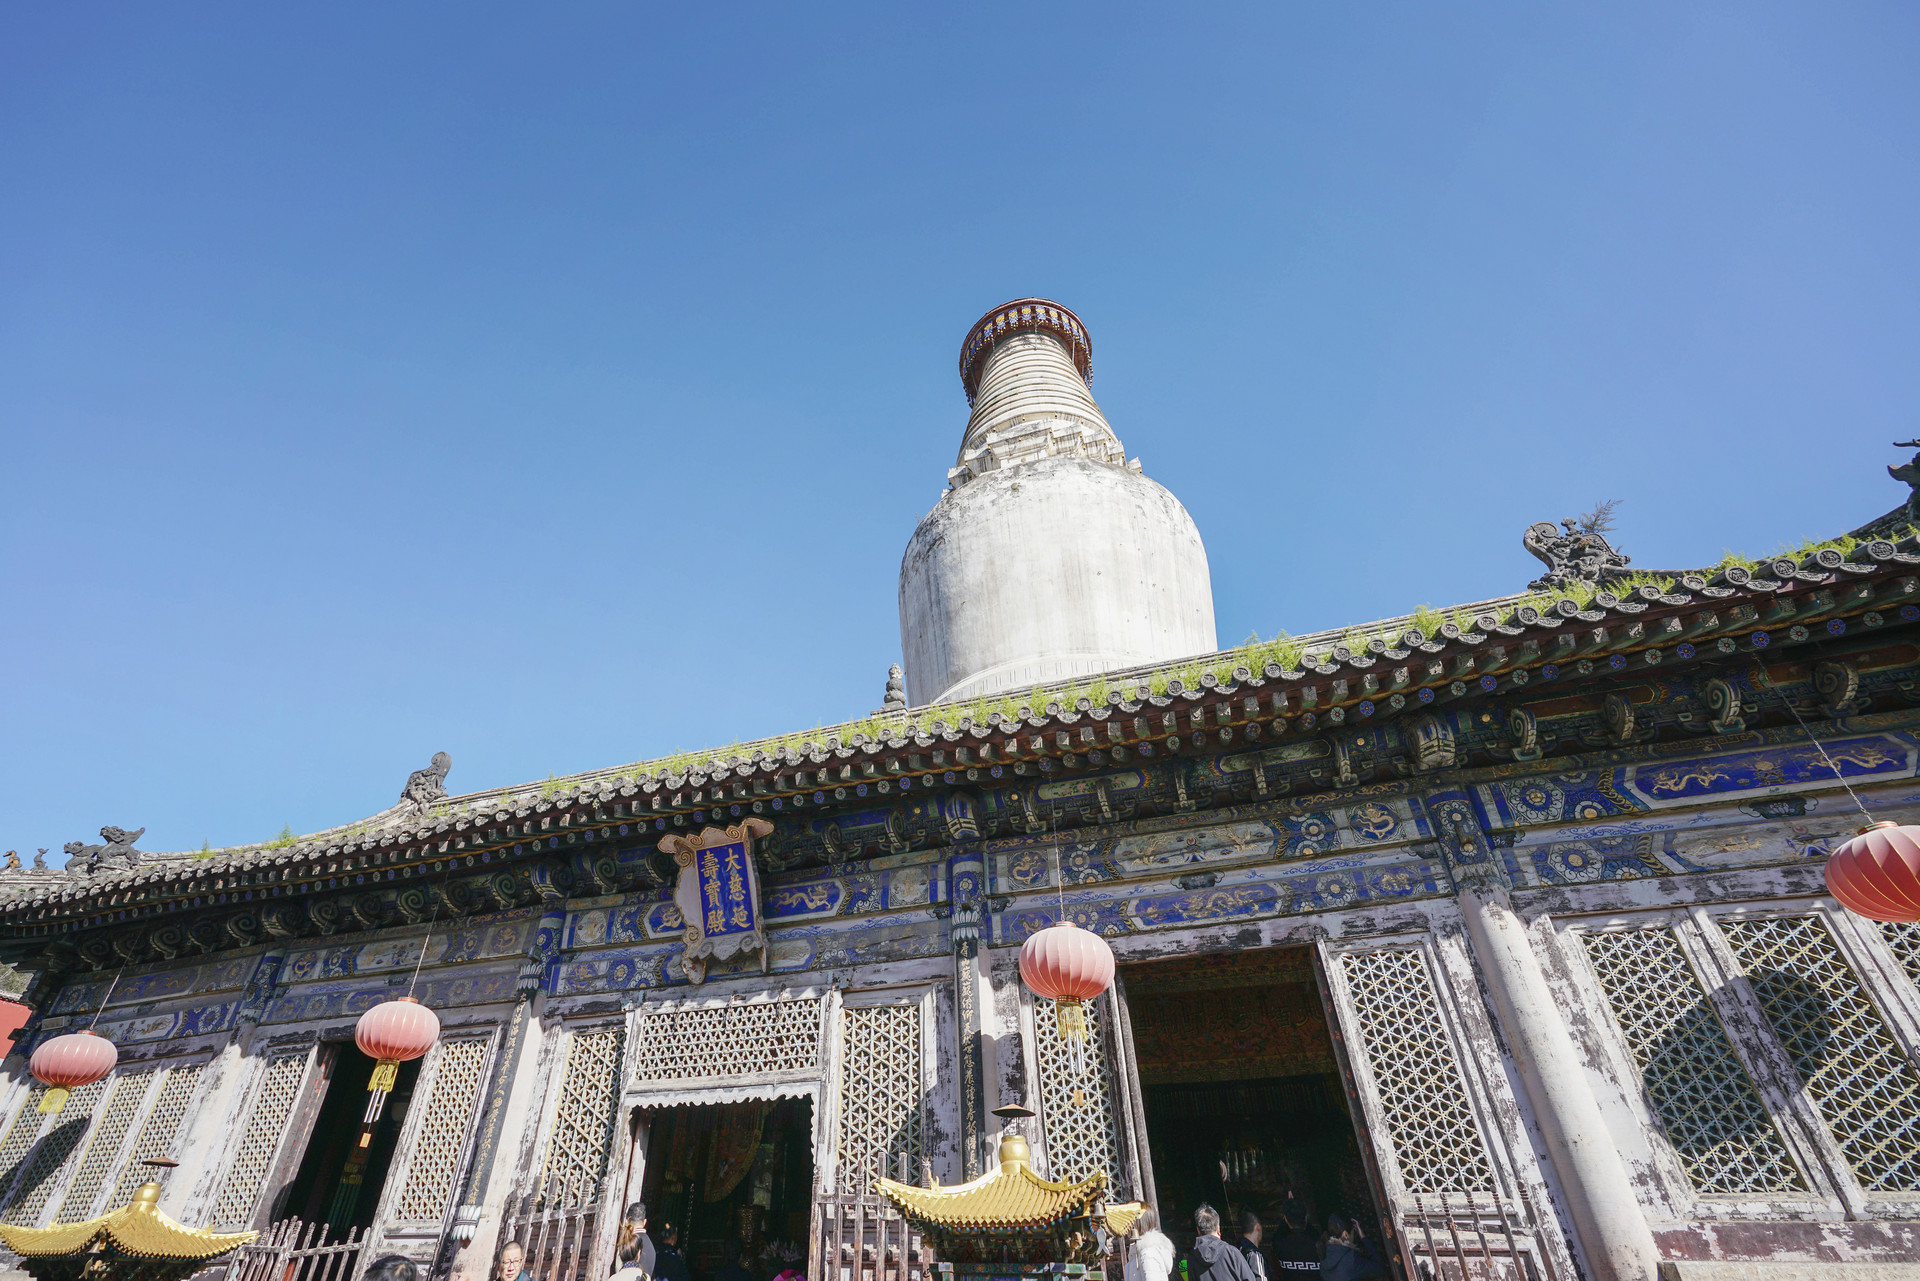 塔院寺,位列五台山五大禅林之一,也是许多游客到访的寺庙